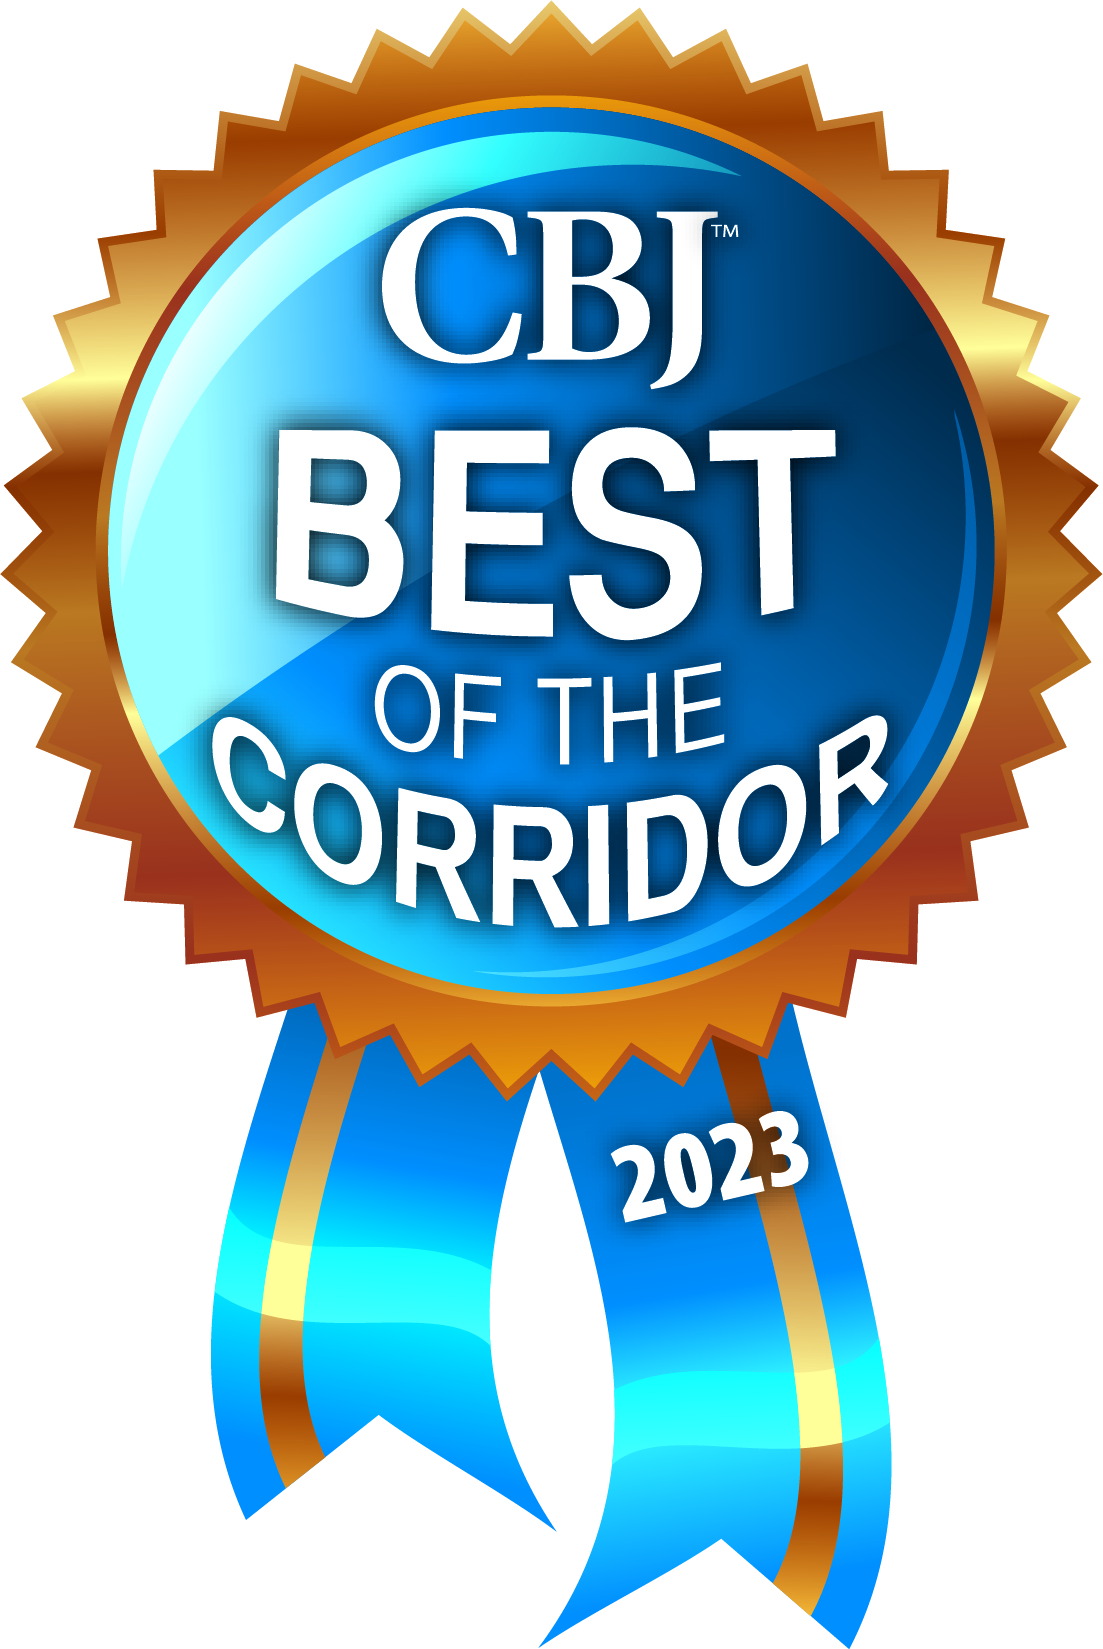 CBJ Best of the Corridor 2023